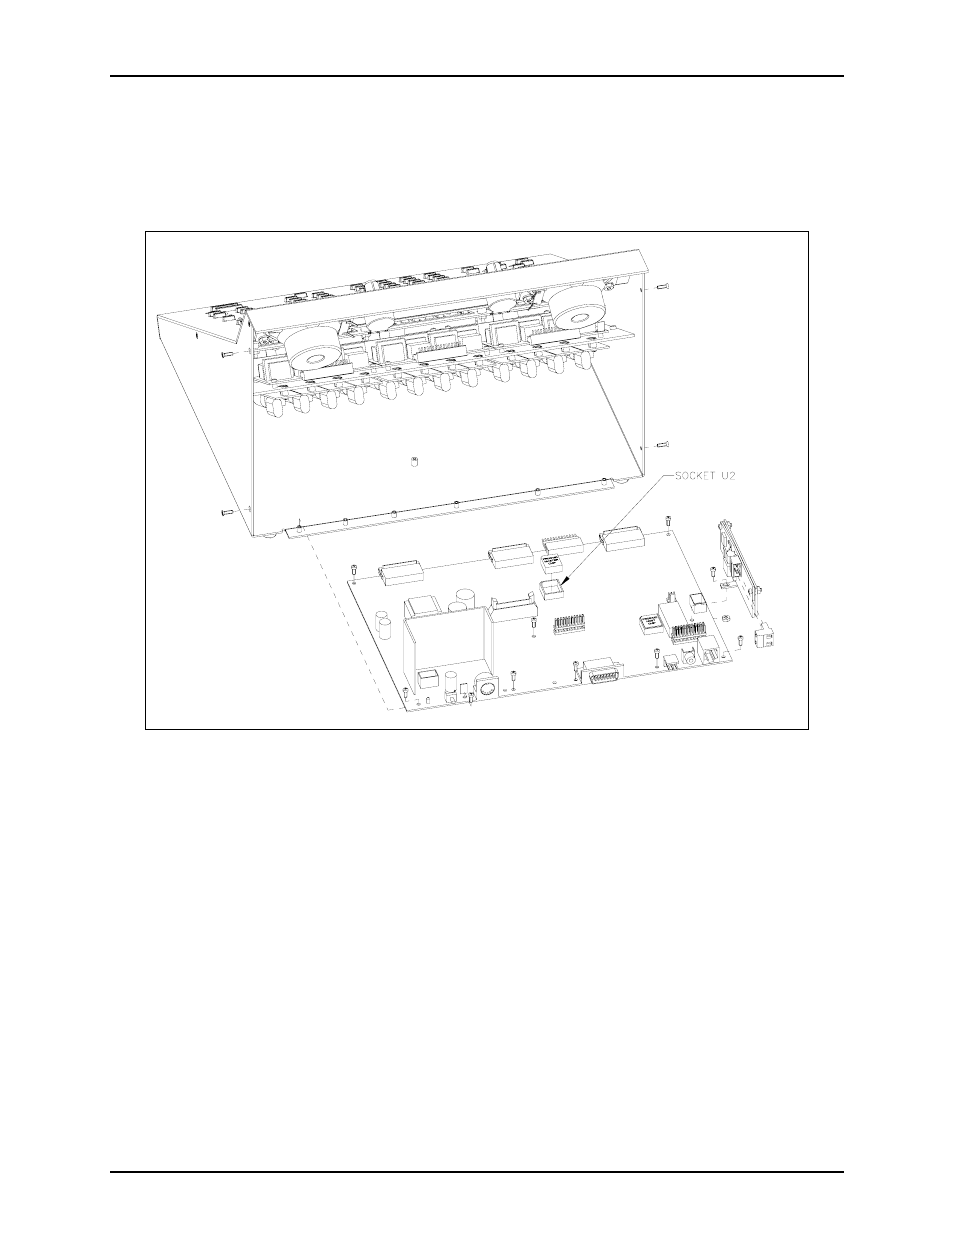 GAI-Tronics TDN9413A Stat-Alert Signaling Module Kit User Manual | Page 3 / 3